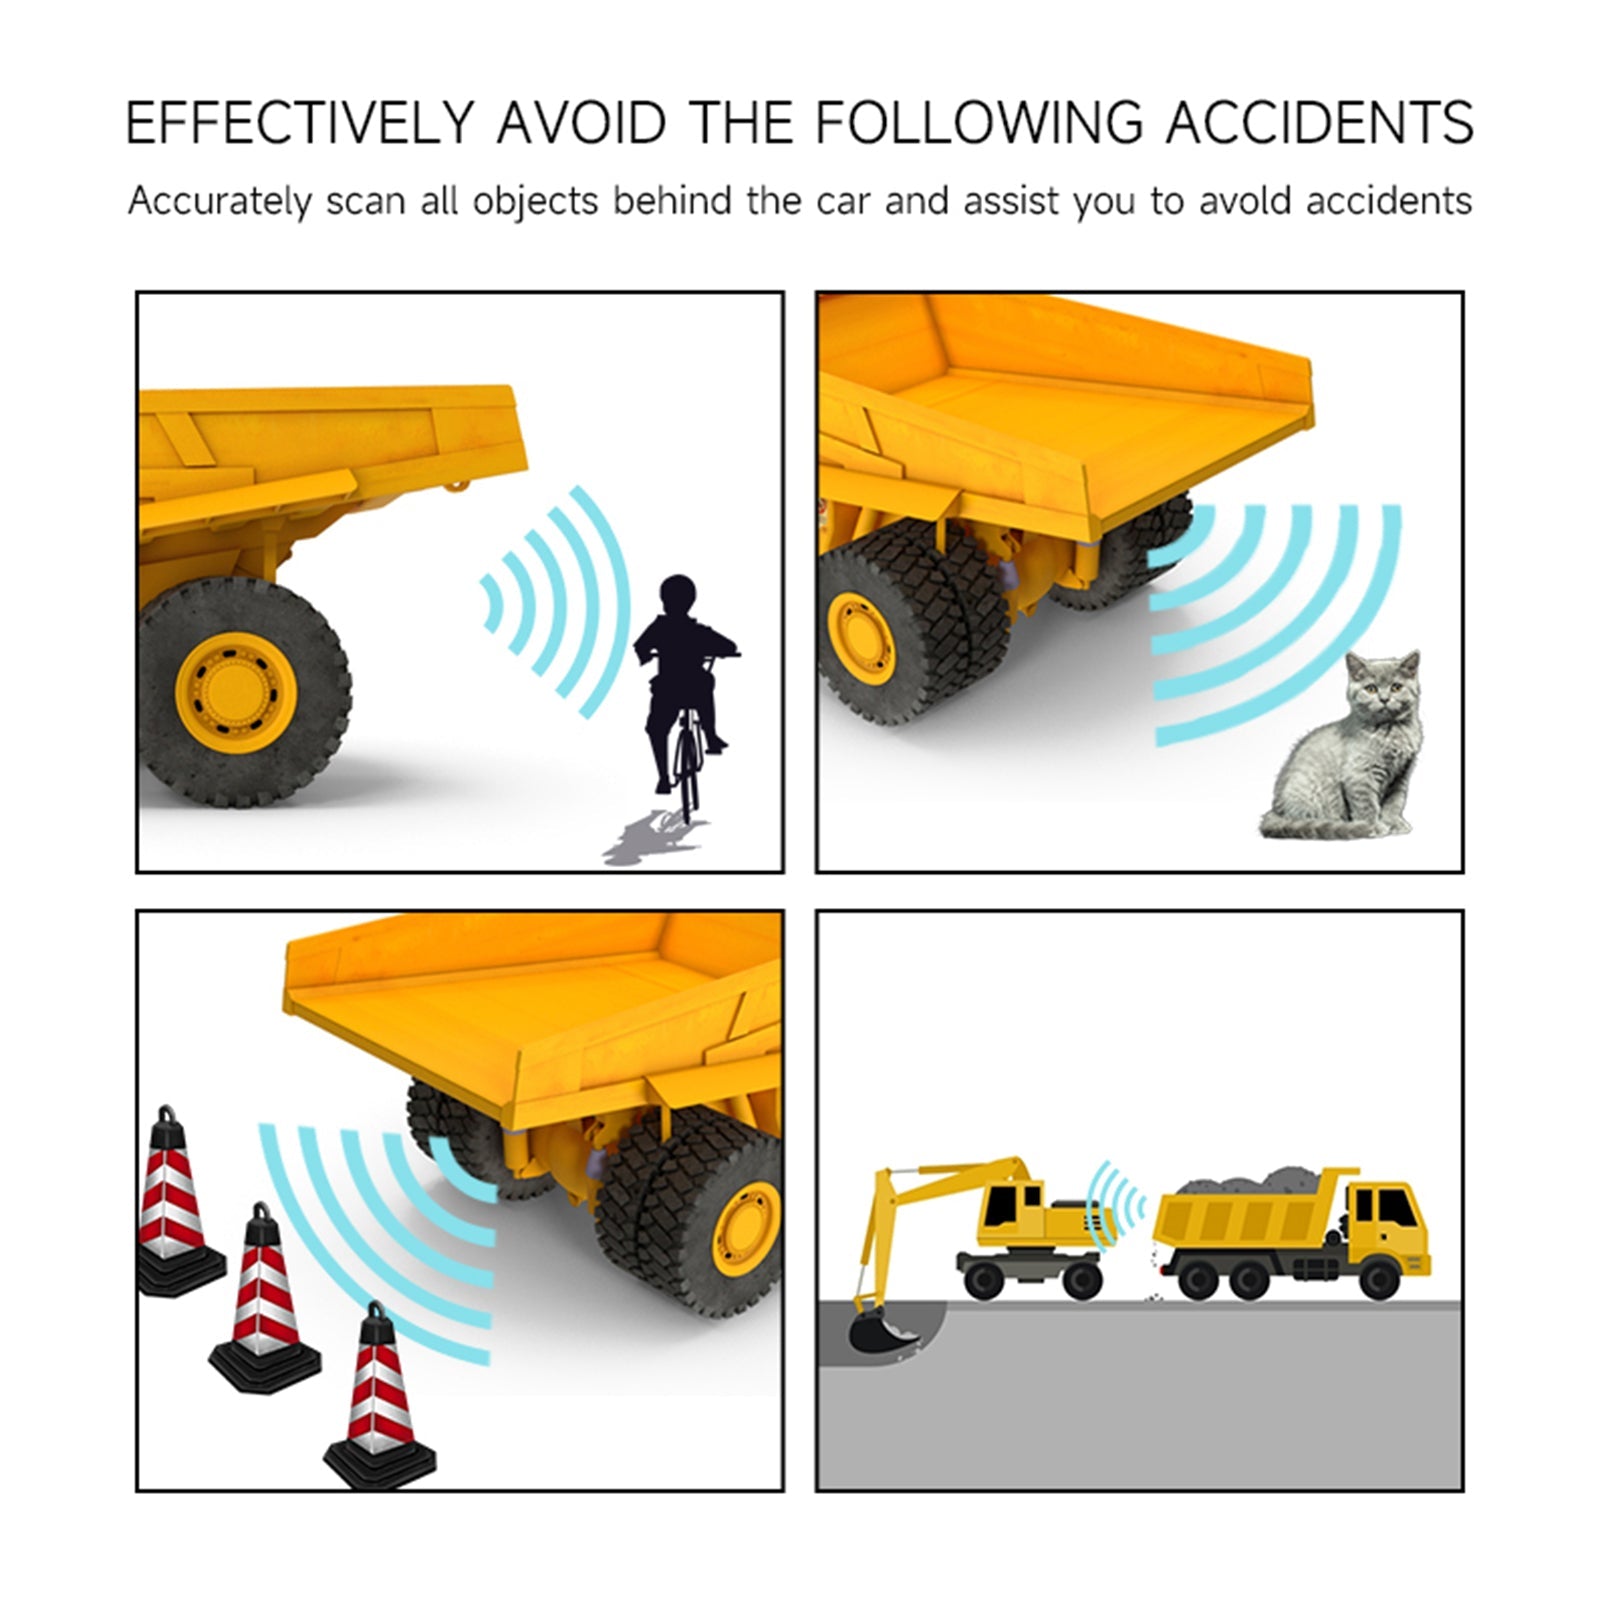 Sistema di allarme radar per evitare ostacoli a onde millimetriche da 77 Ghz per camion di cemento